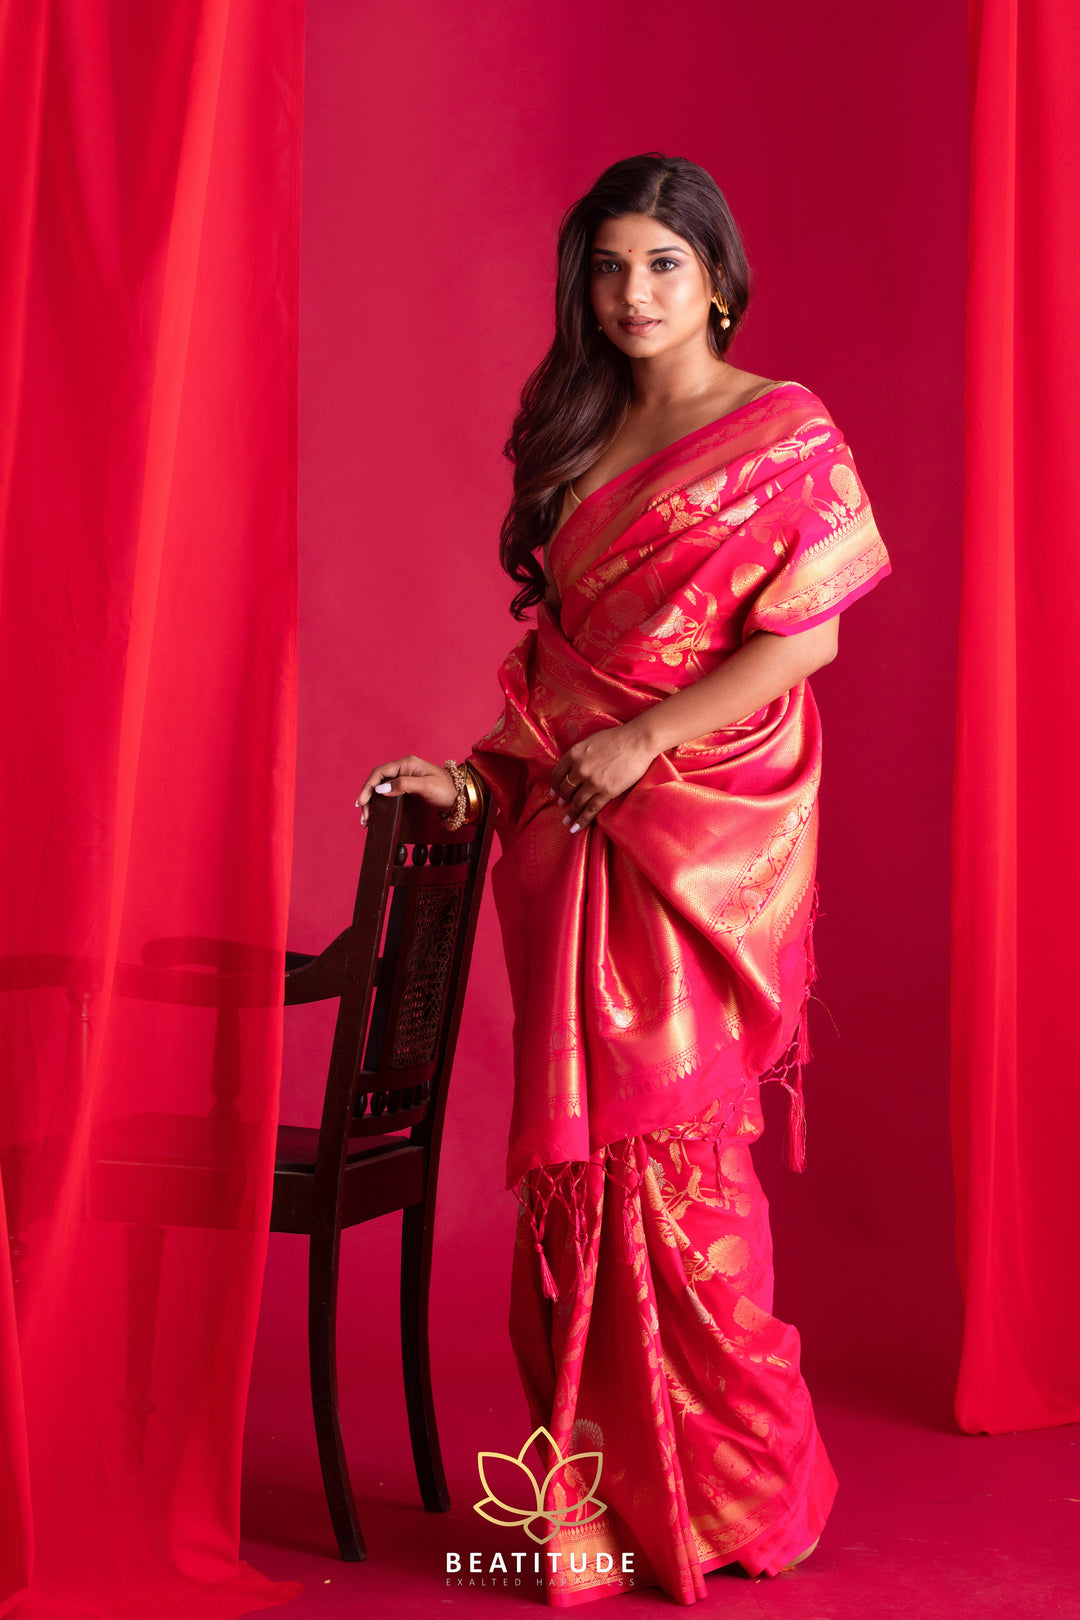 Beatitude Pink Banarasi Saree with Unstitched Blouse